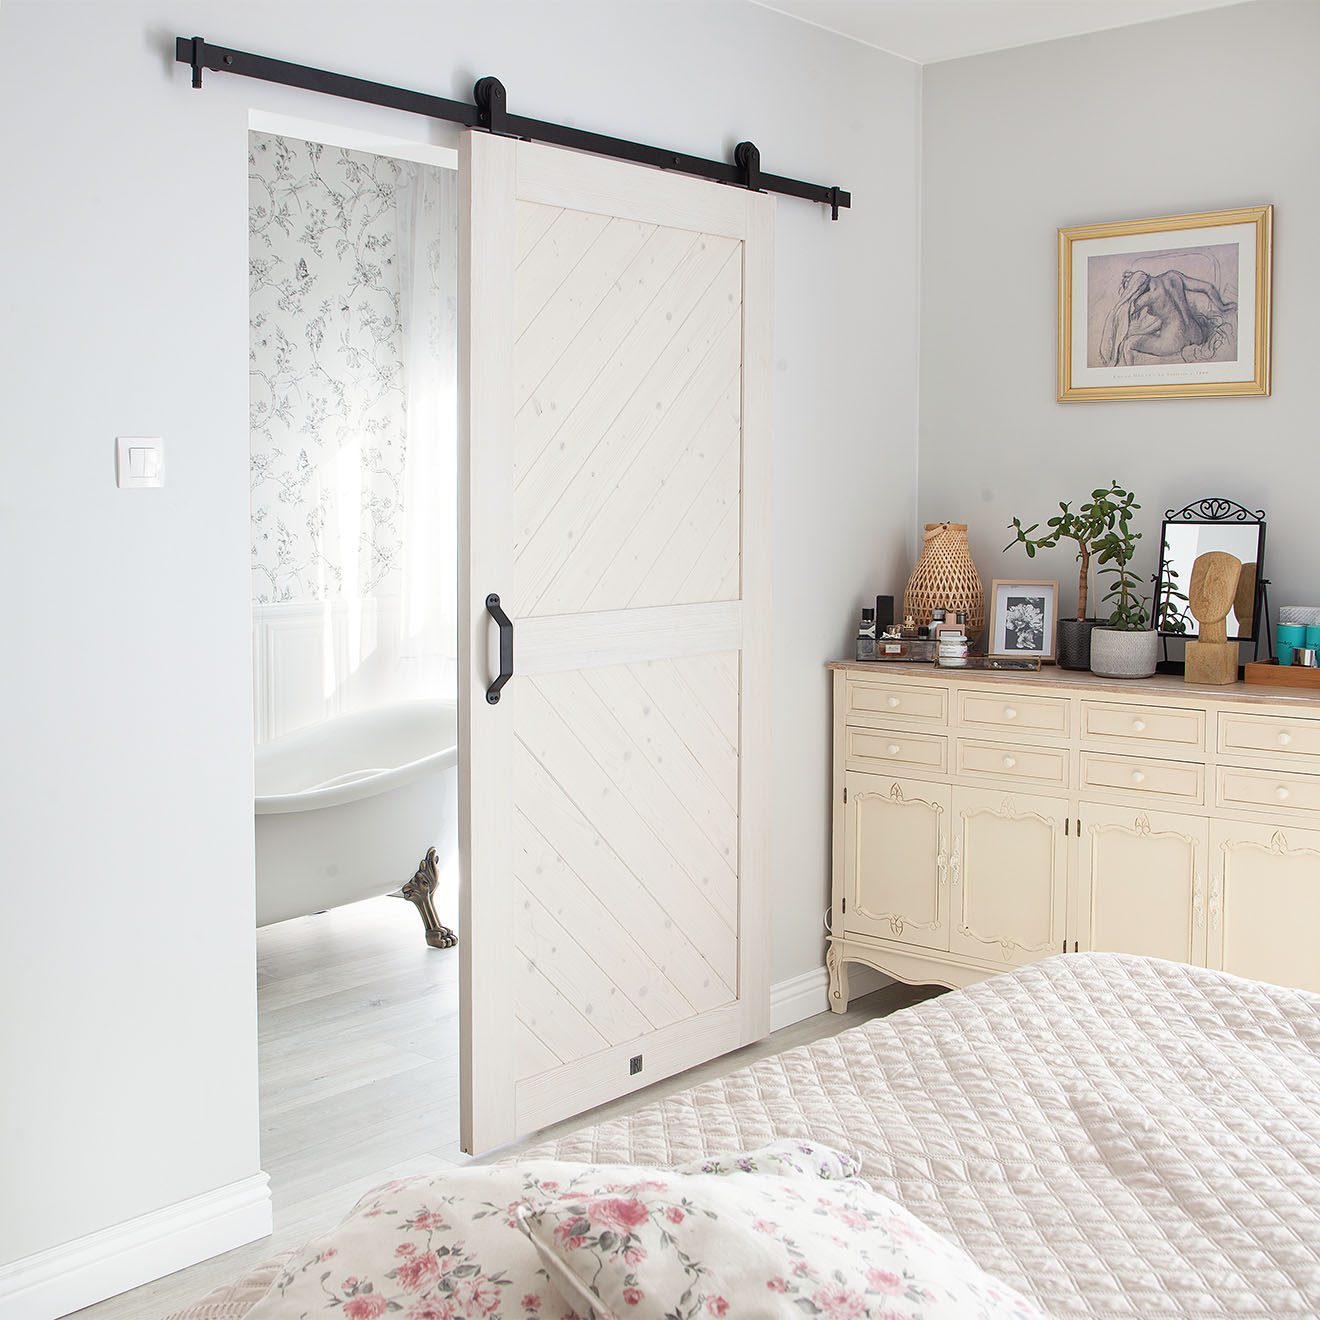 białe drewniane drzwi przesuwne oddzielające łazienkę od sypialni urządzonej w stylu prowansalskim